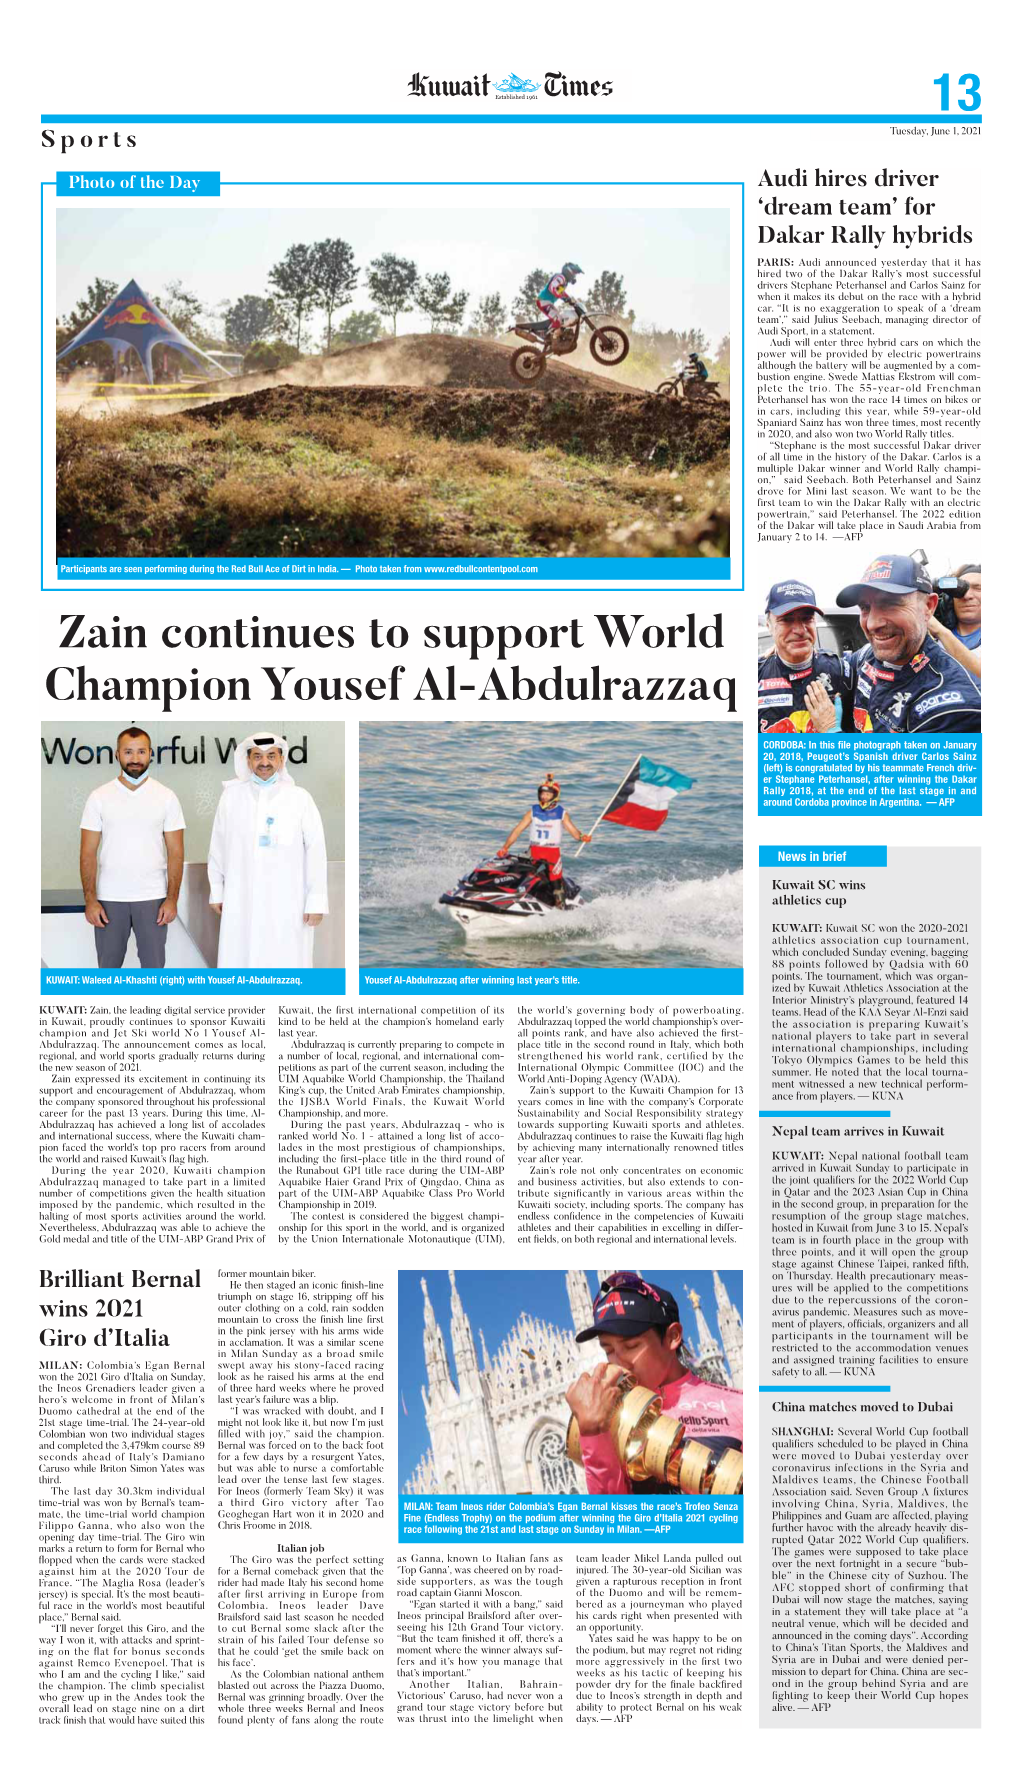 Zain Continues to Support World Champion Yousef Al-Abdulrazzaq